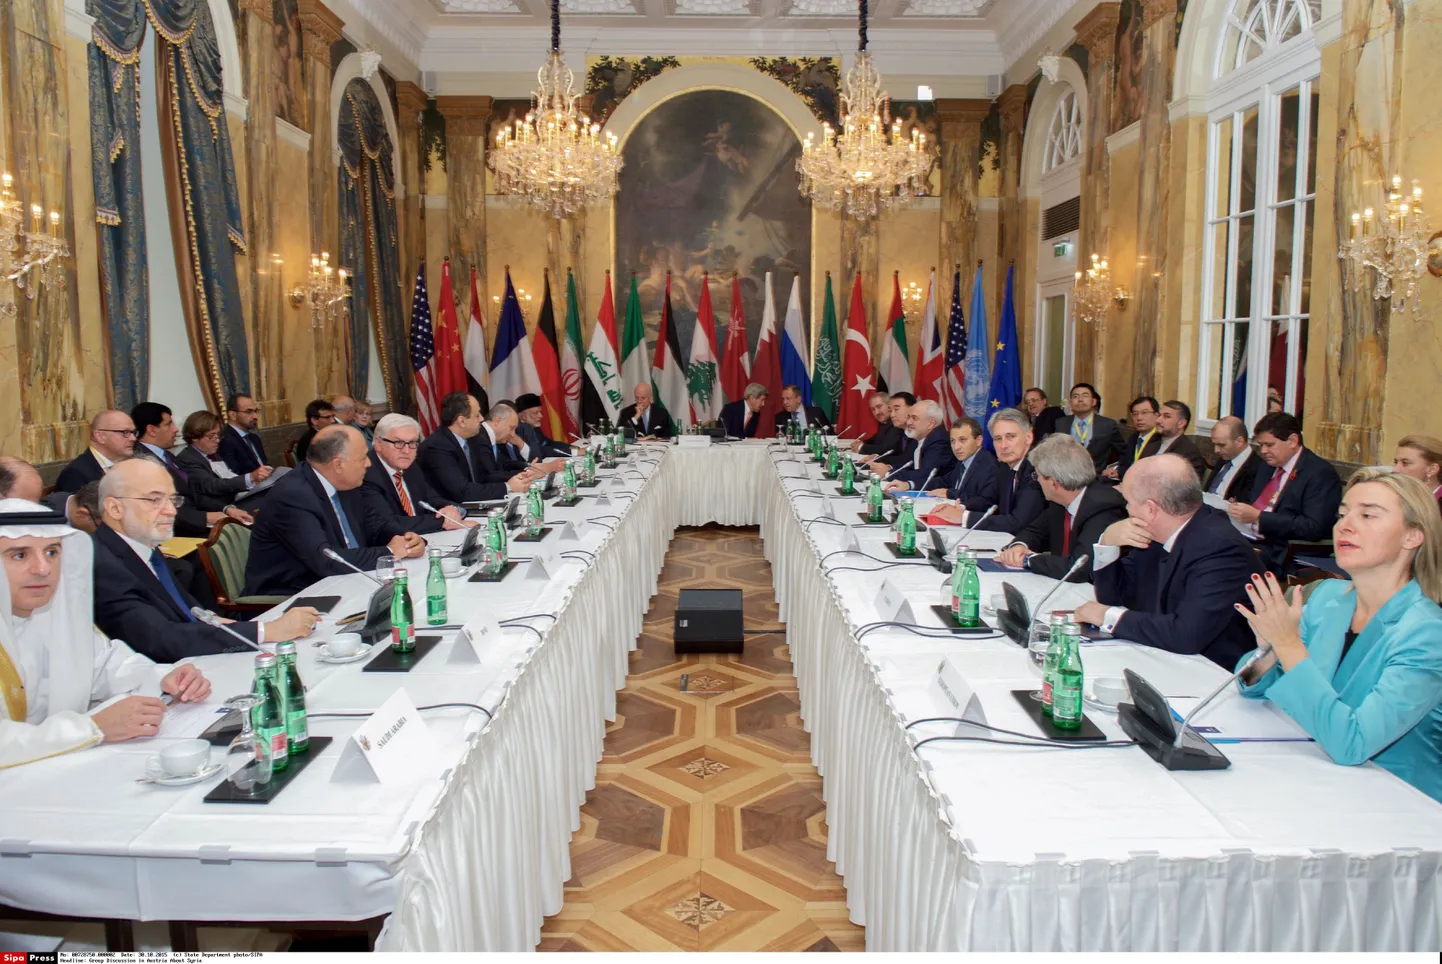 Переговоры в Вене по урегулированию ситуации в Сирии впервые проходят с участием всех стран, вовлеченных в конфликт.